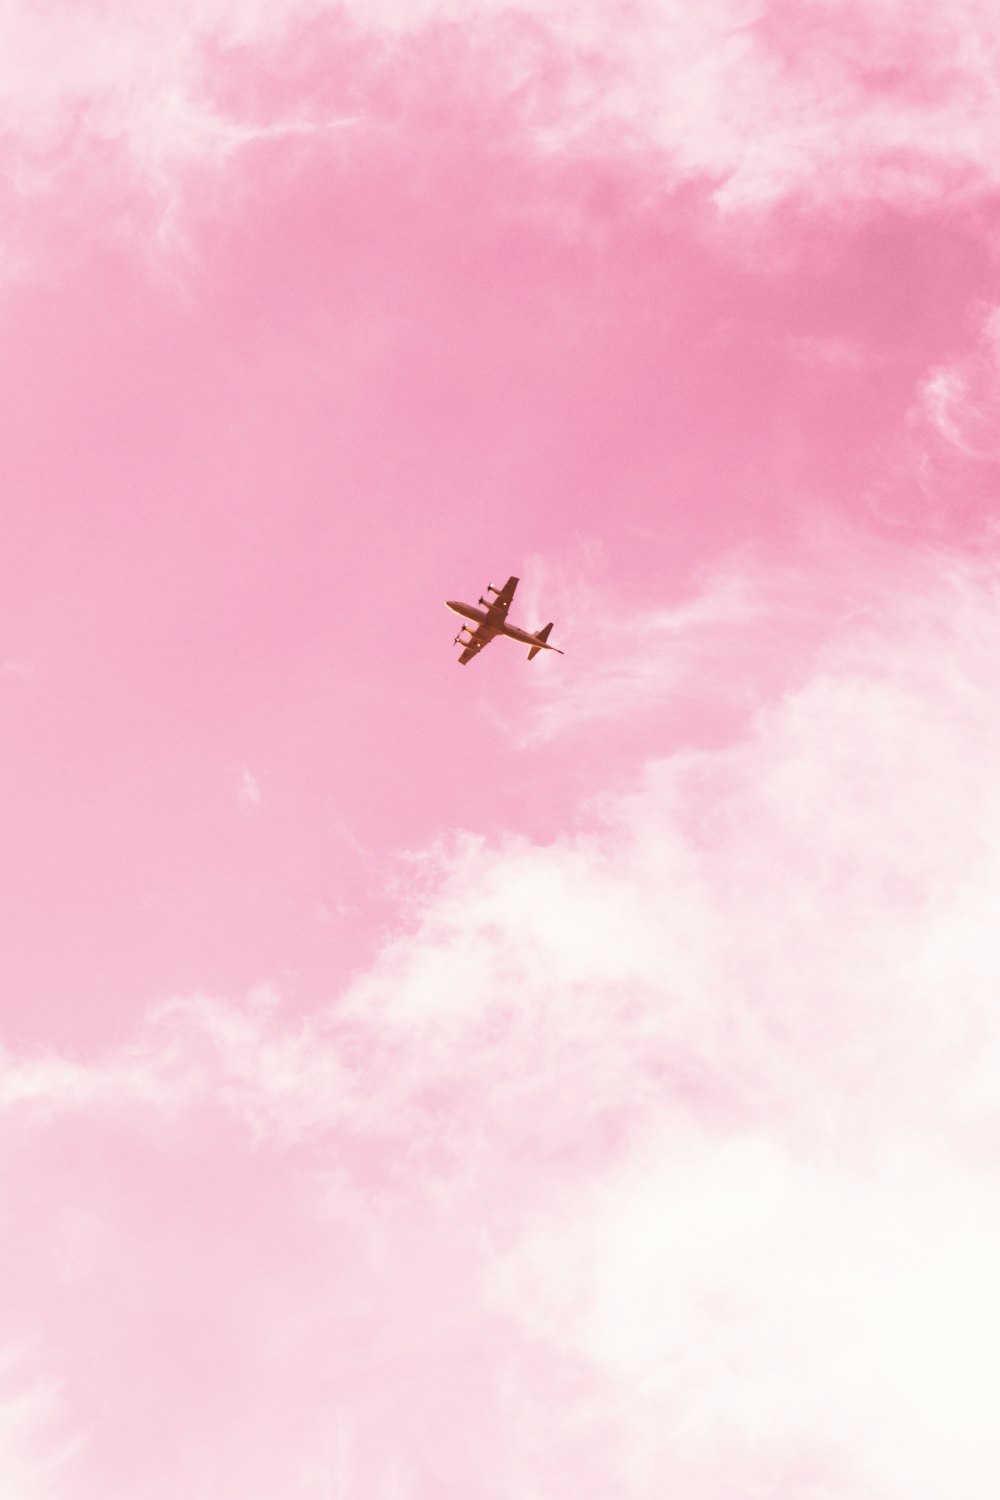 Flugzeug am Himmel während des Tages